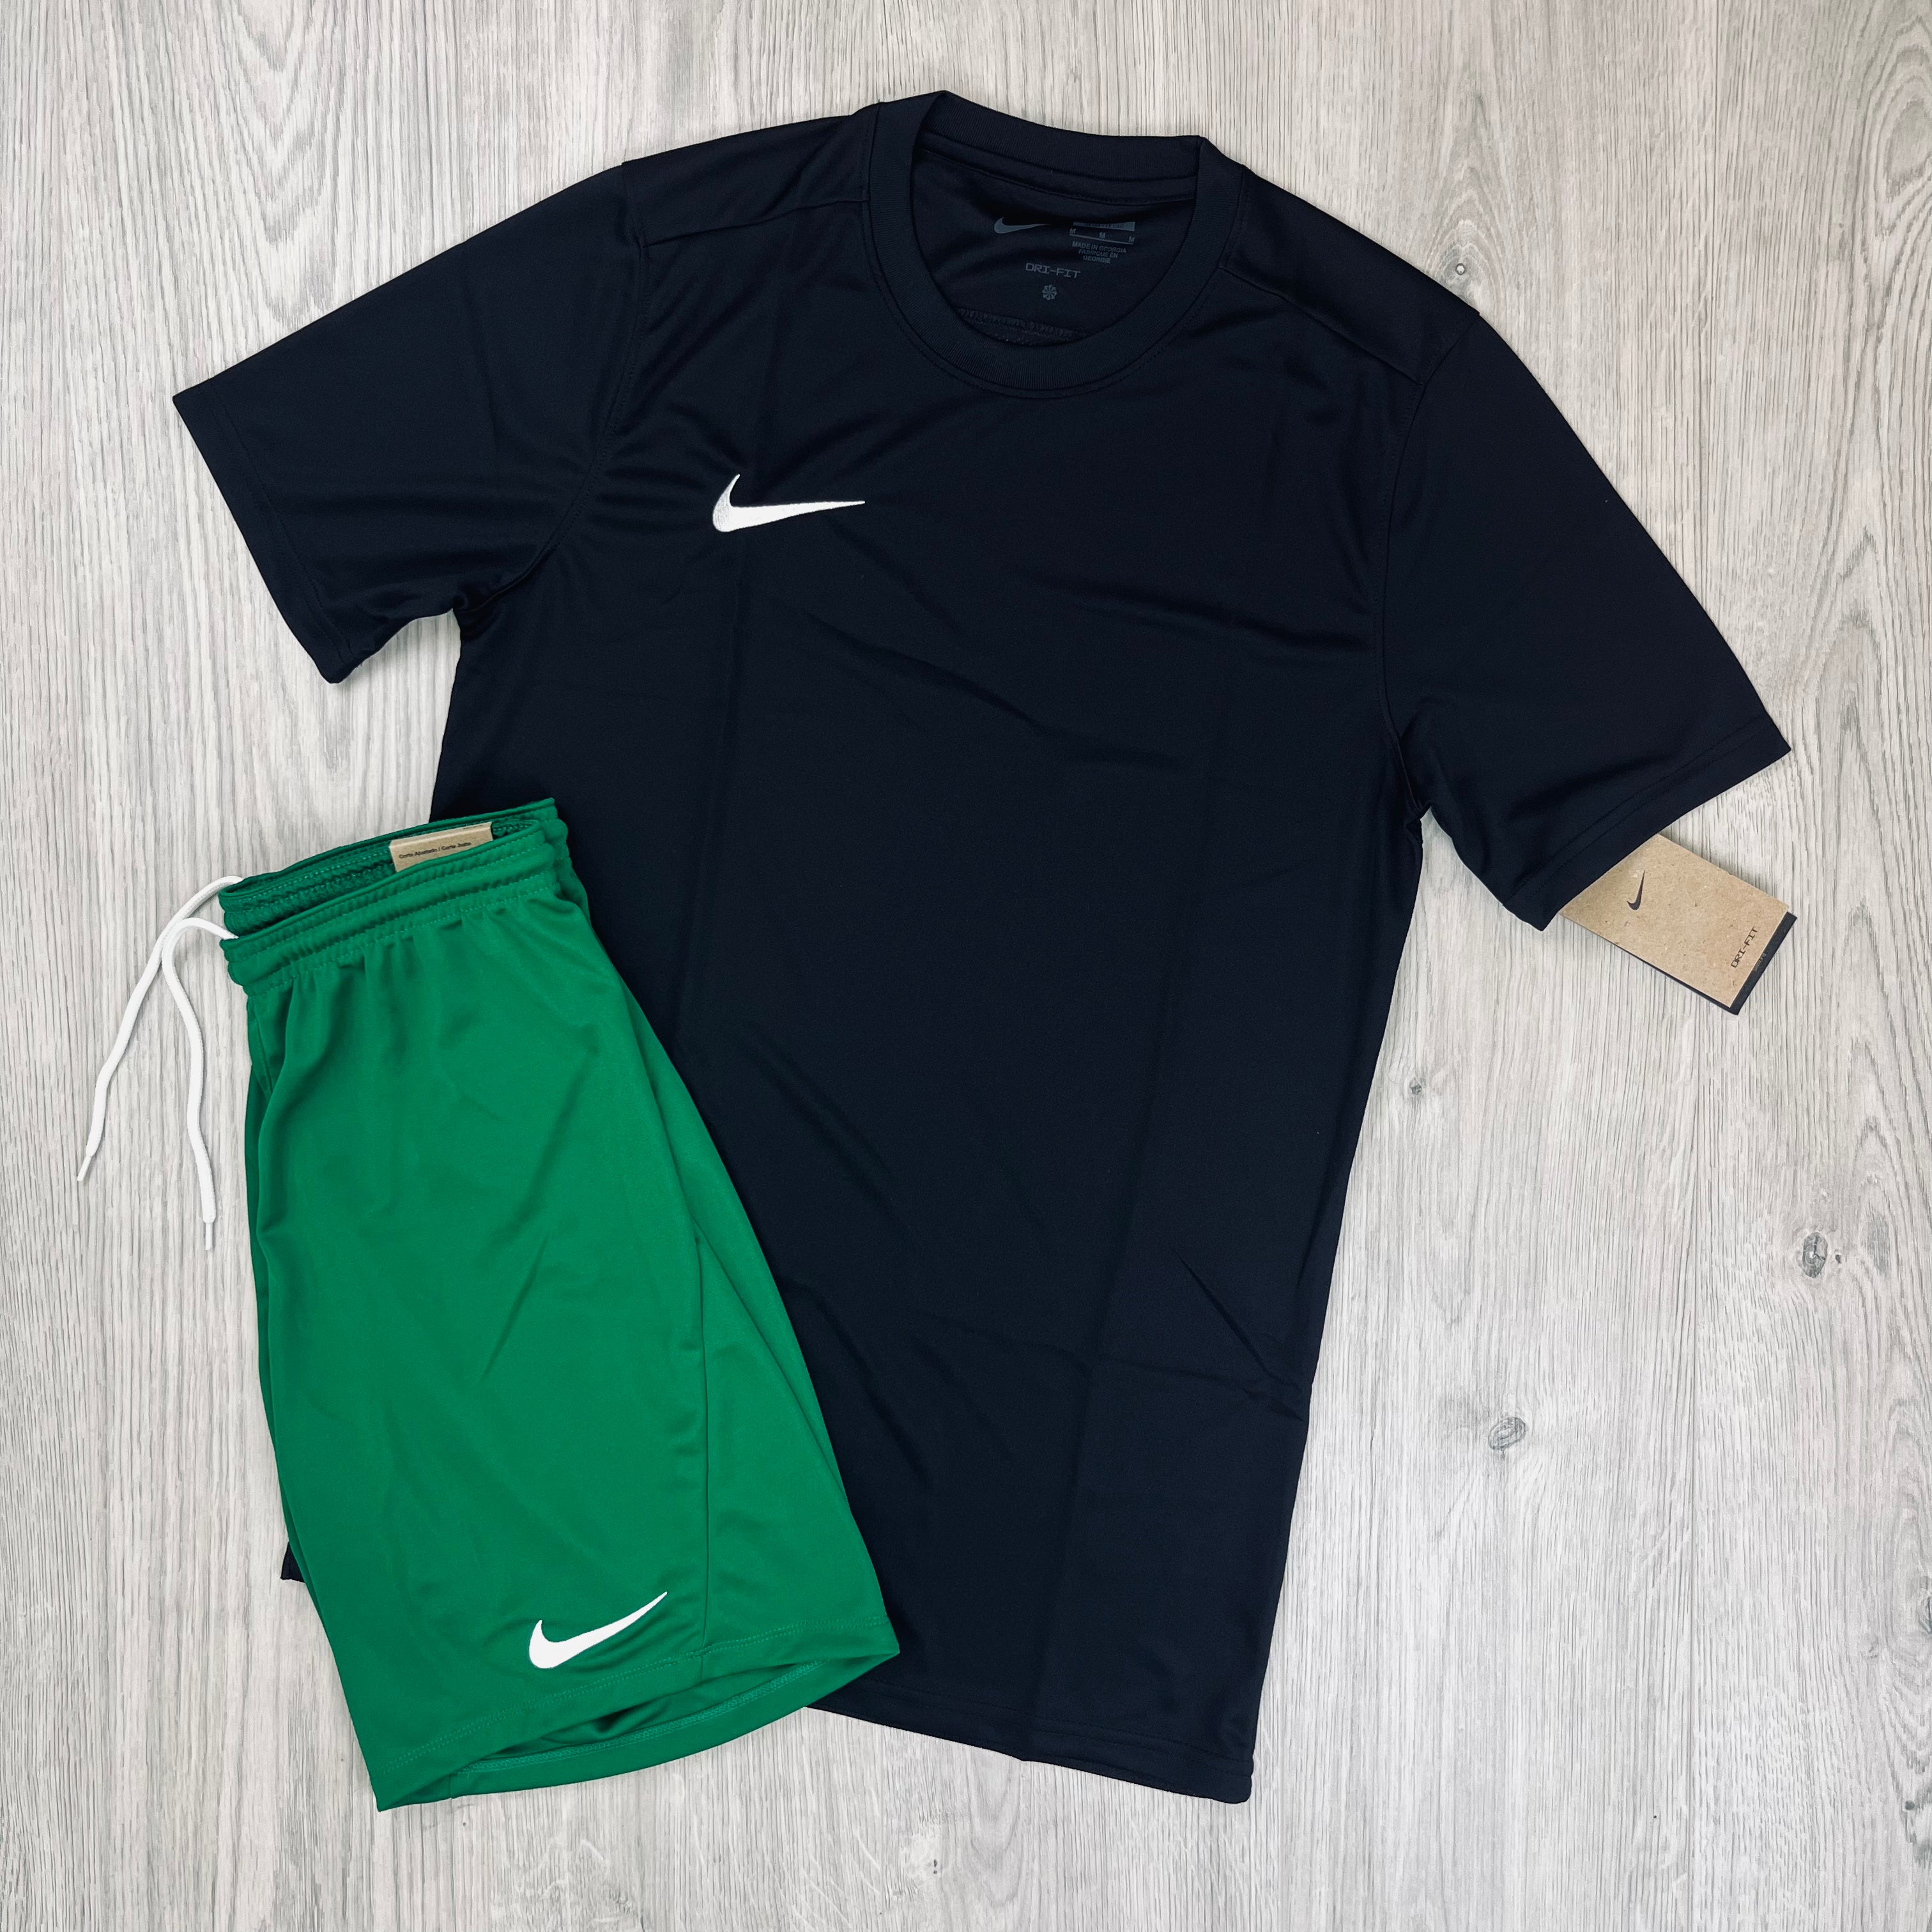 Nike Dri-Fit Set - Black/Green